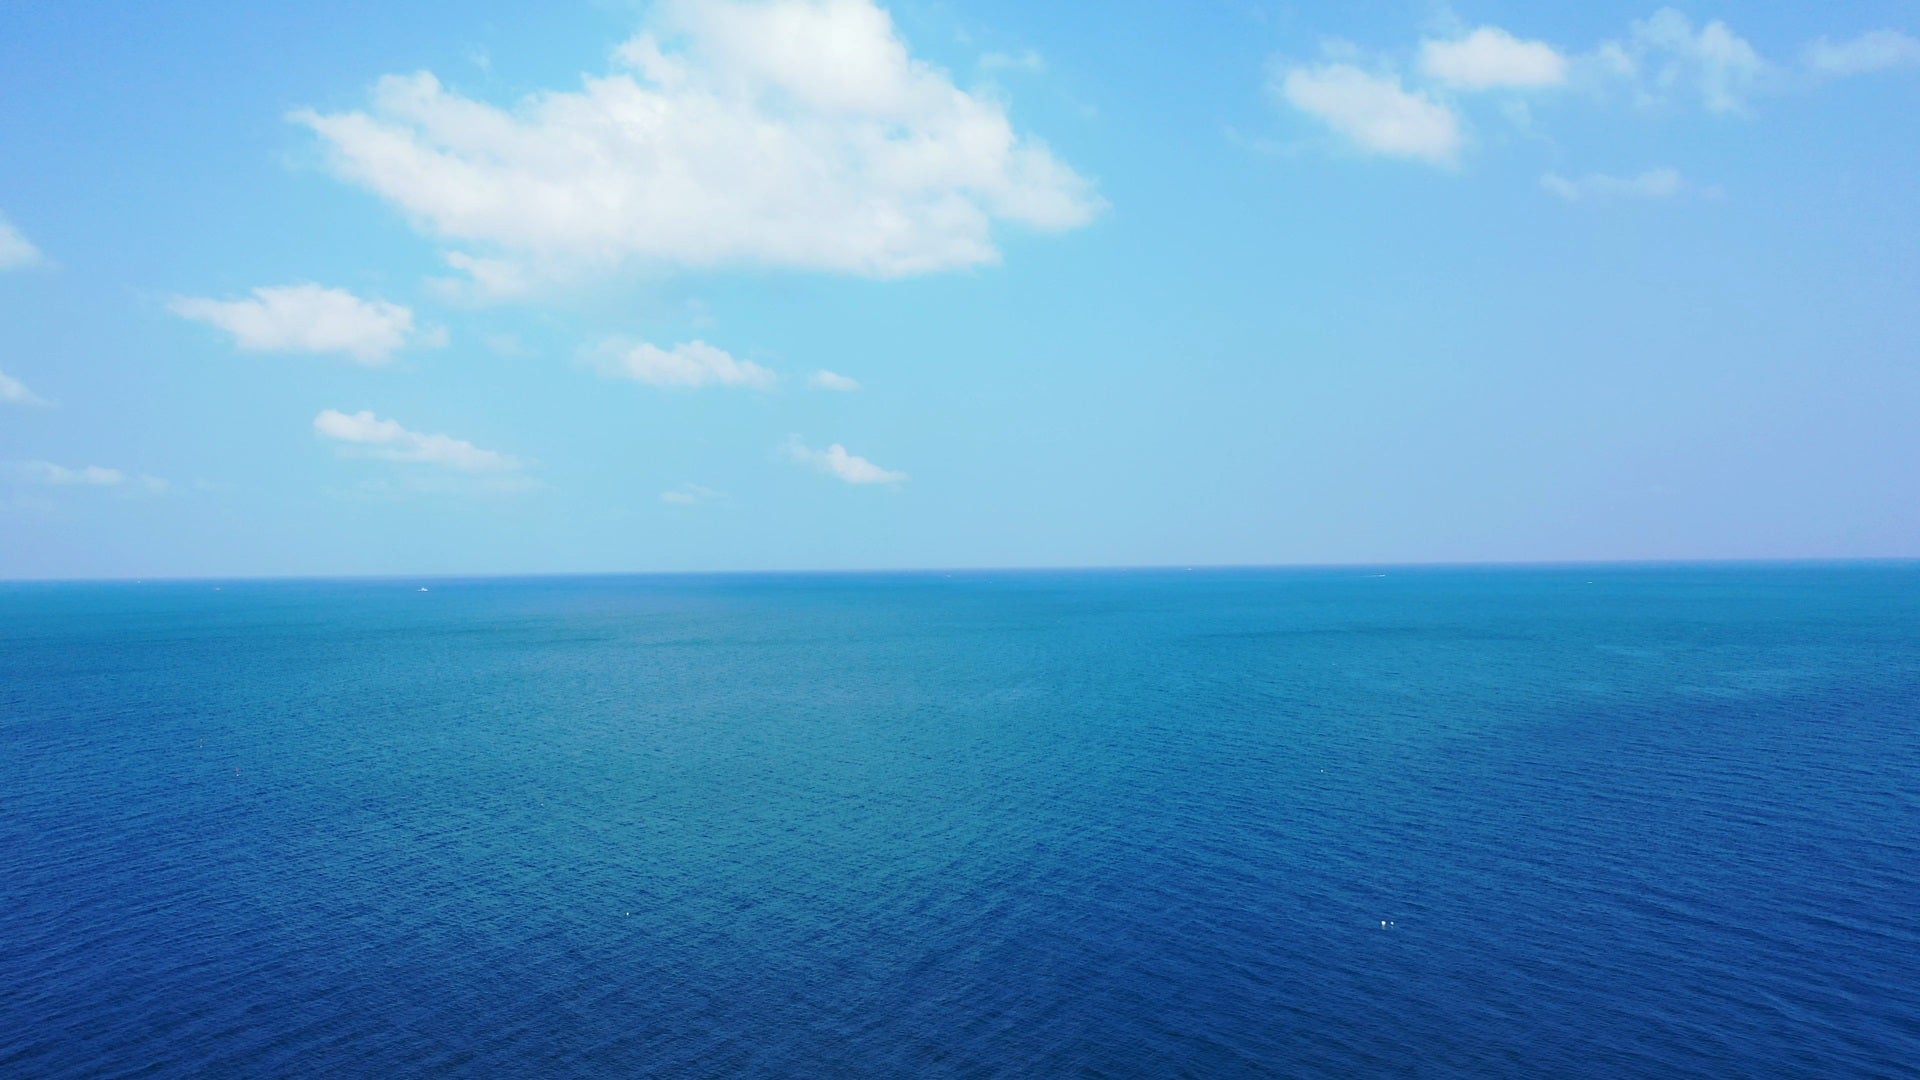 Csendes kék tengerről fénykép